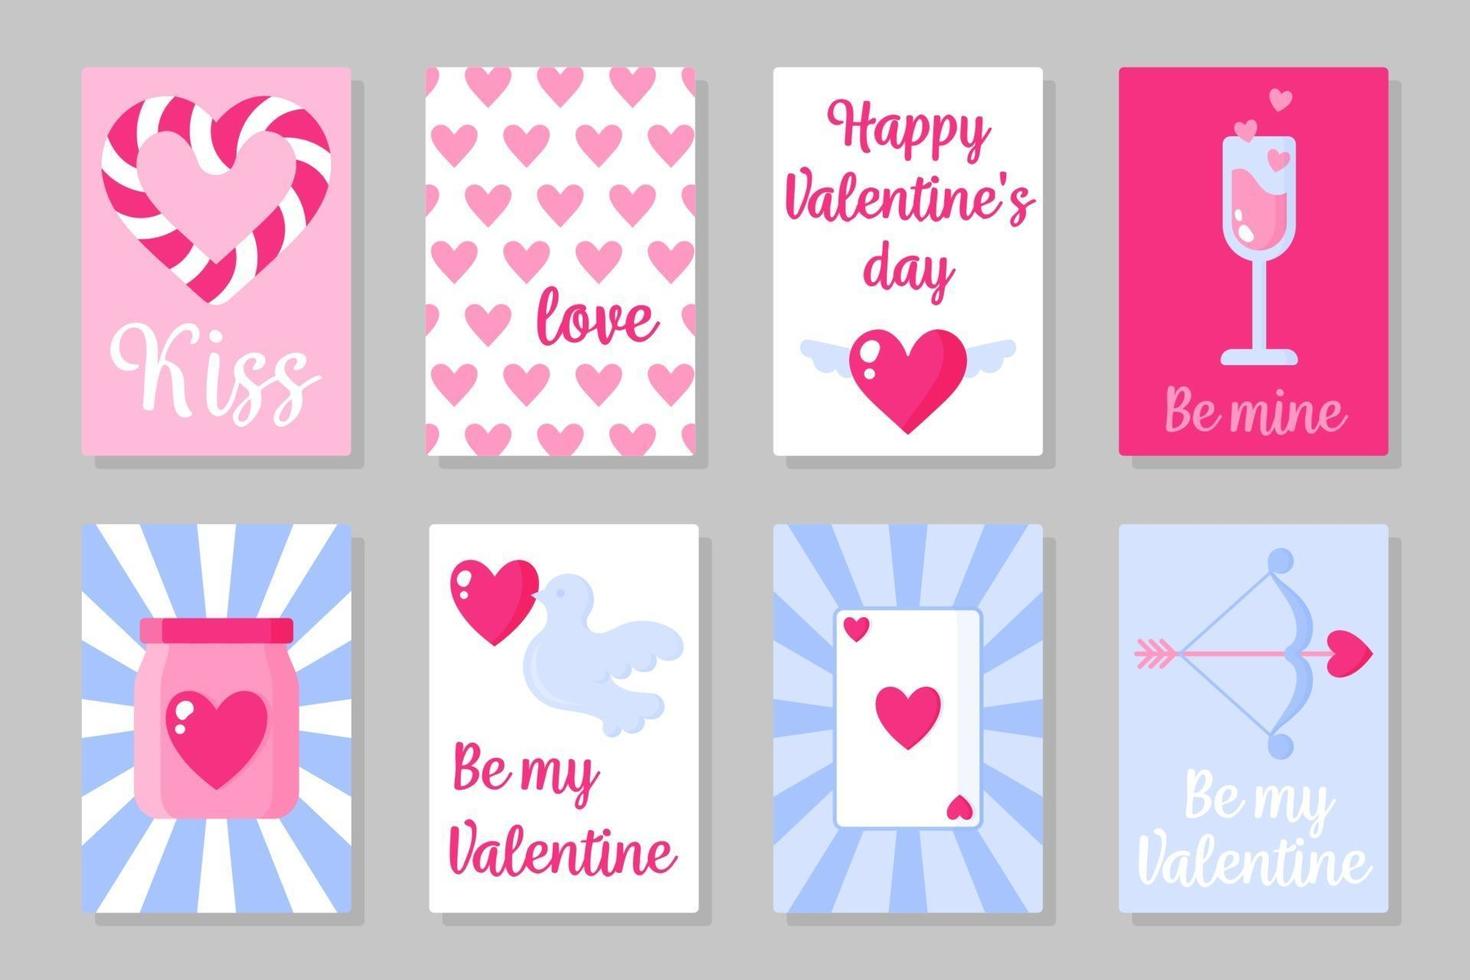 set di carte colorate rosa, bianche e blu per San Valentino o matrimonio. design piatto vettoriale isolato su sfondo grigio